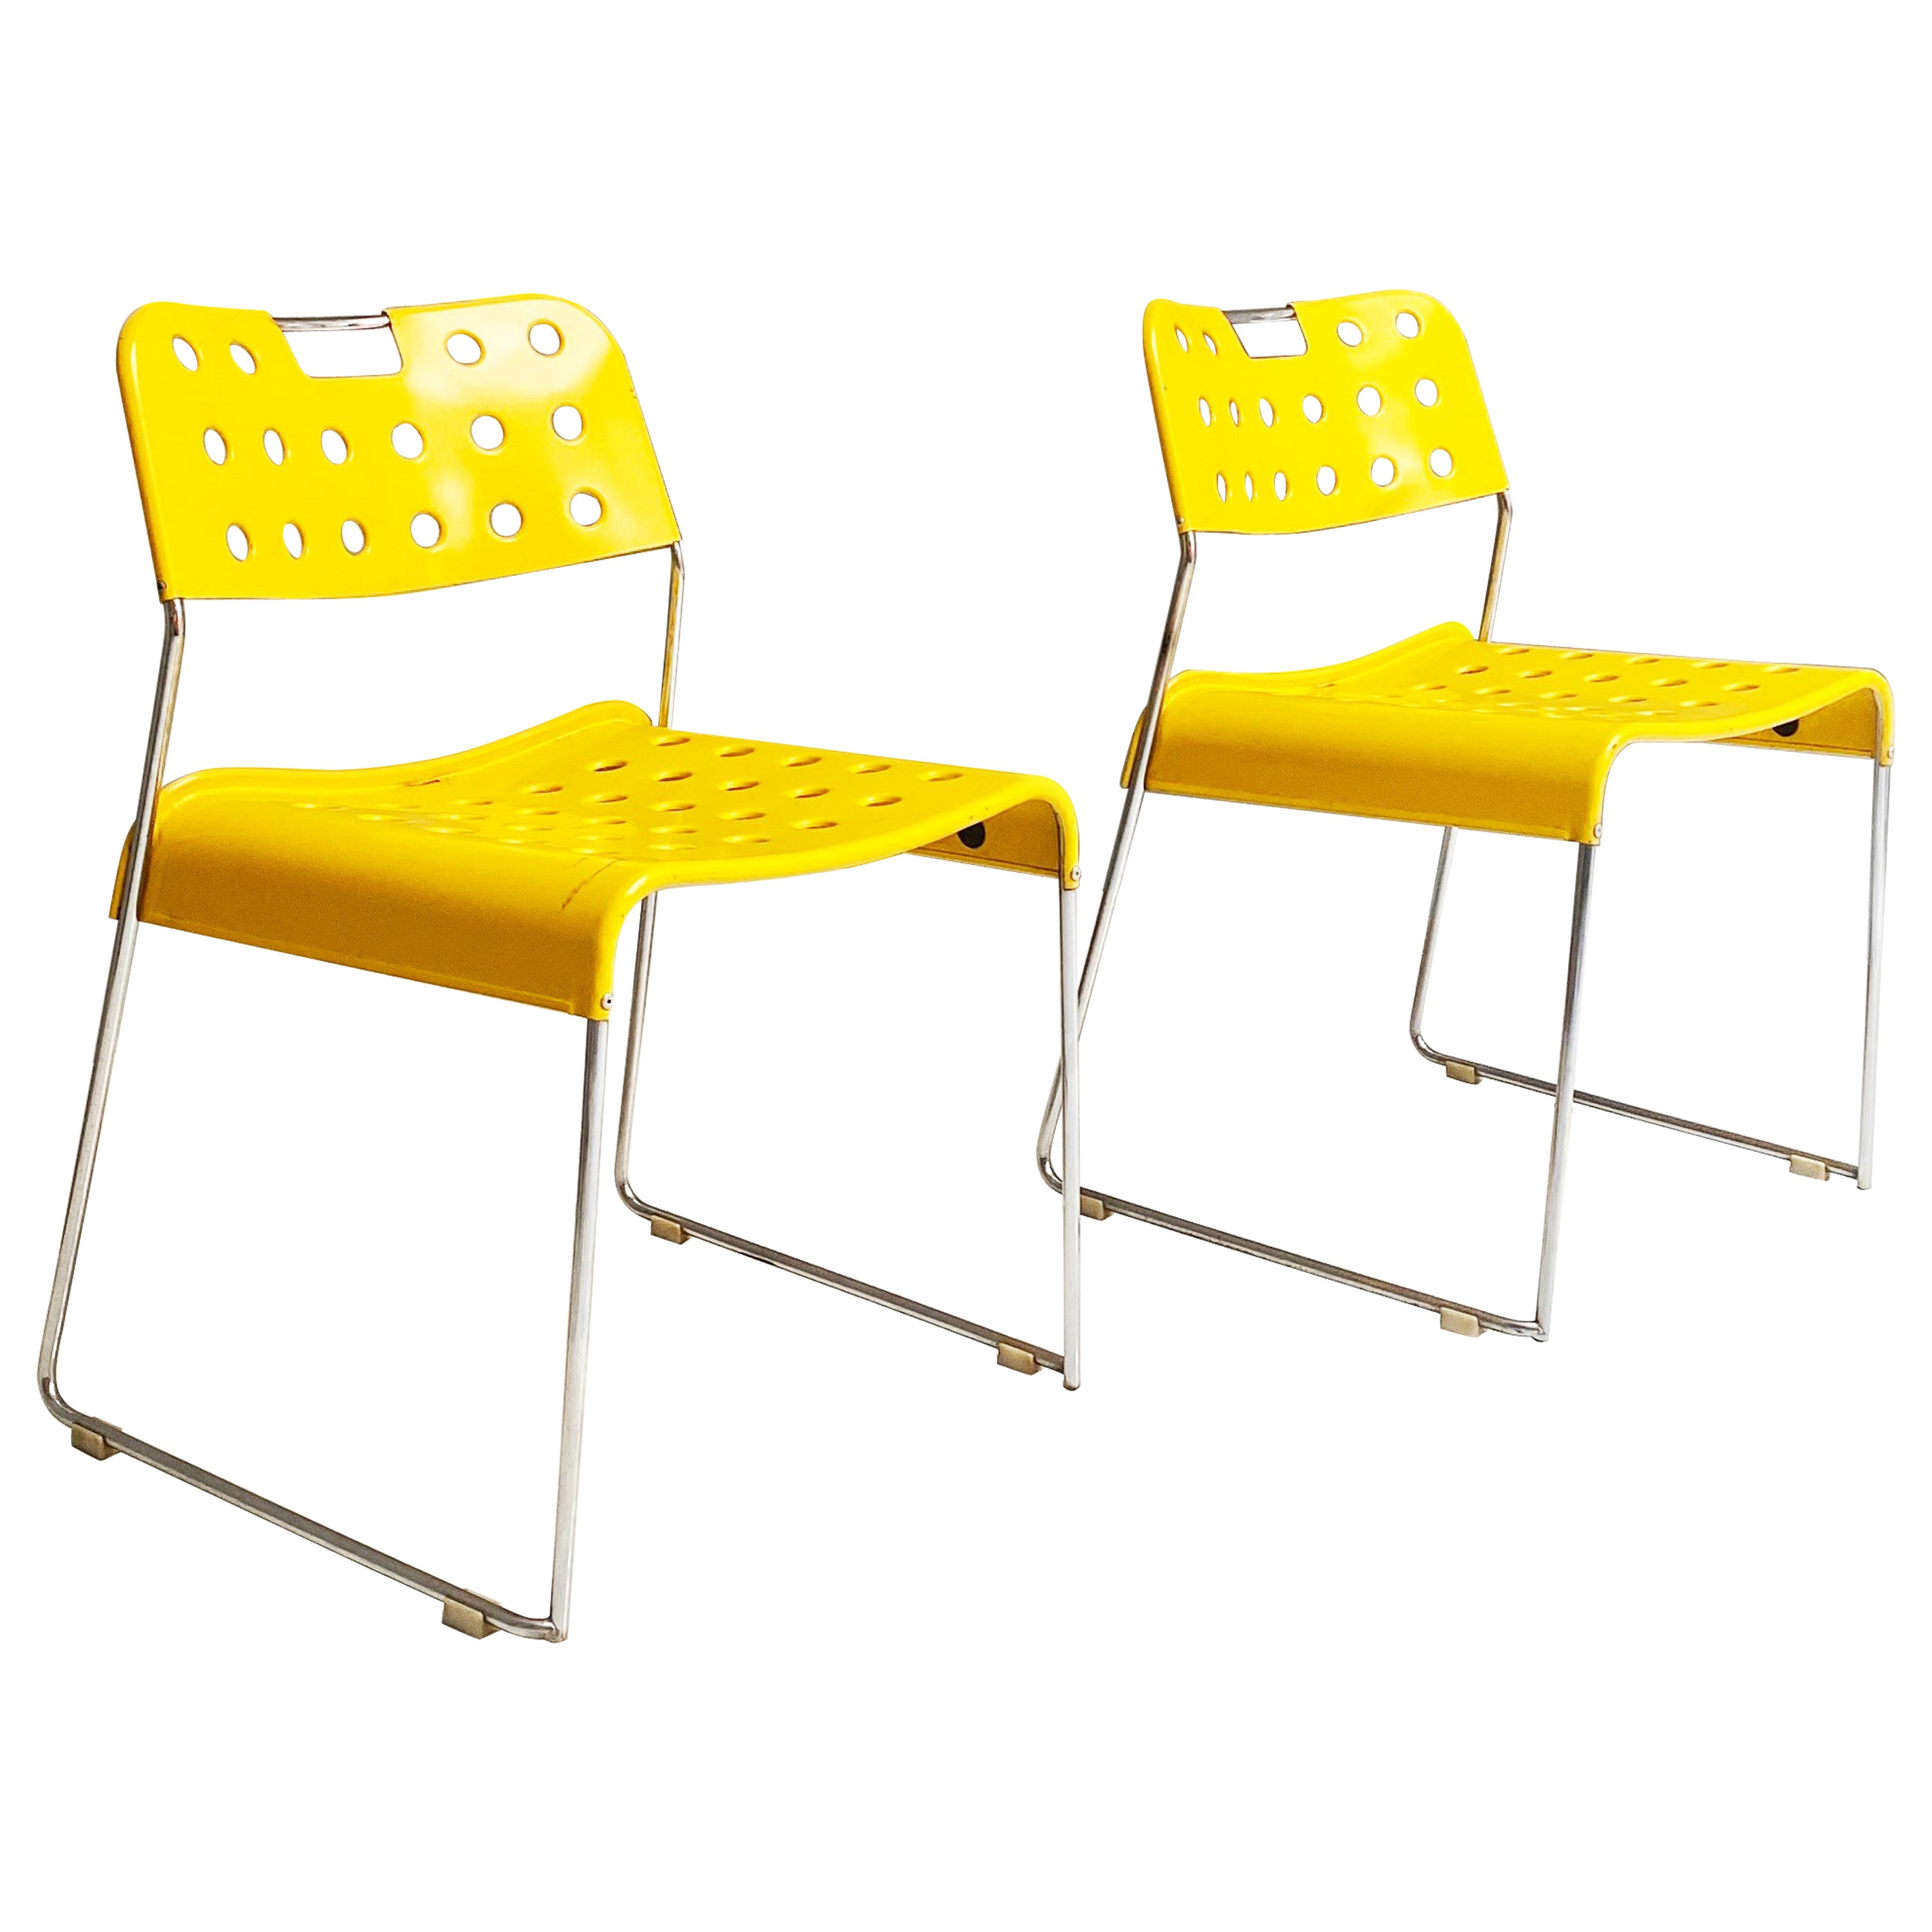 Modern metal Yellow chairs Omstak by Rodney Kinsman for Bieffeplast, 1970s